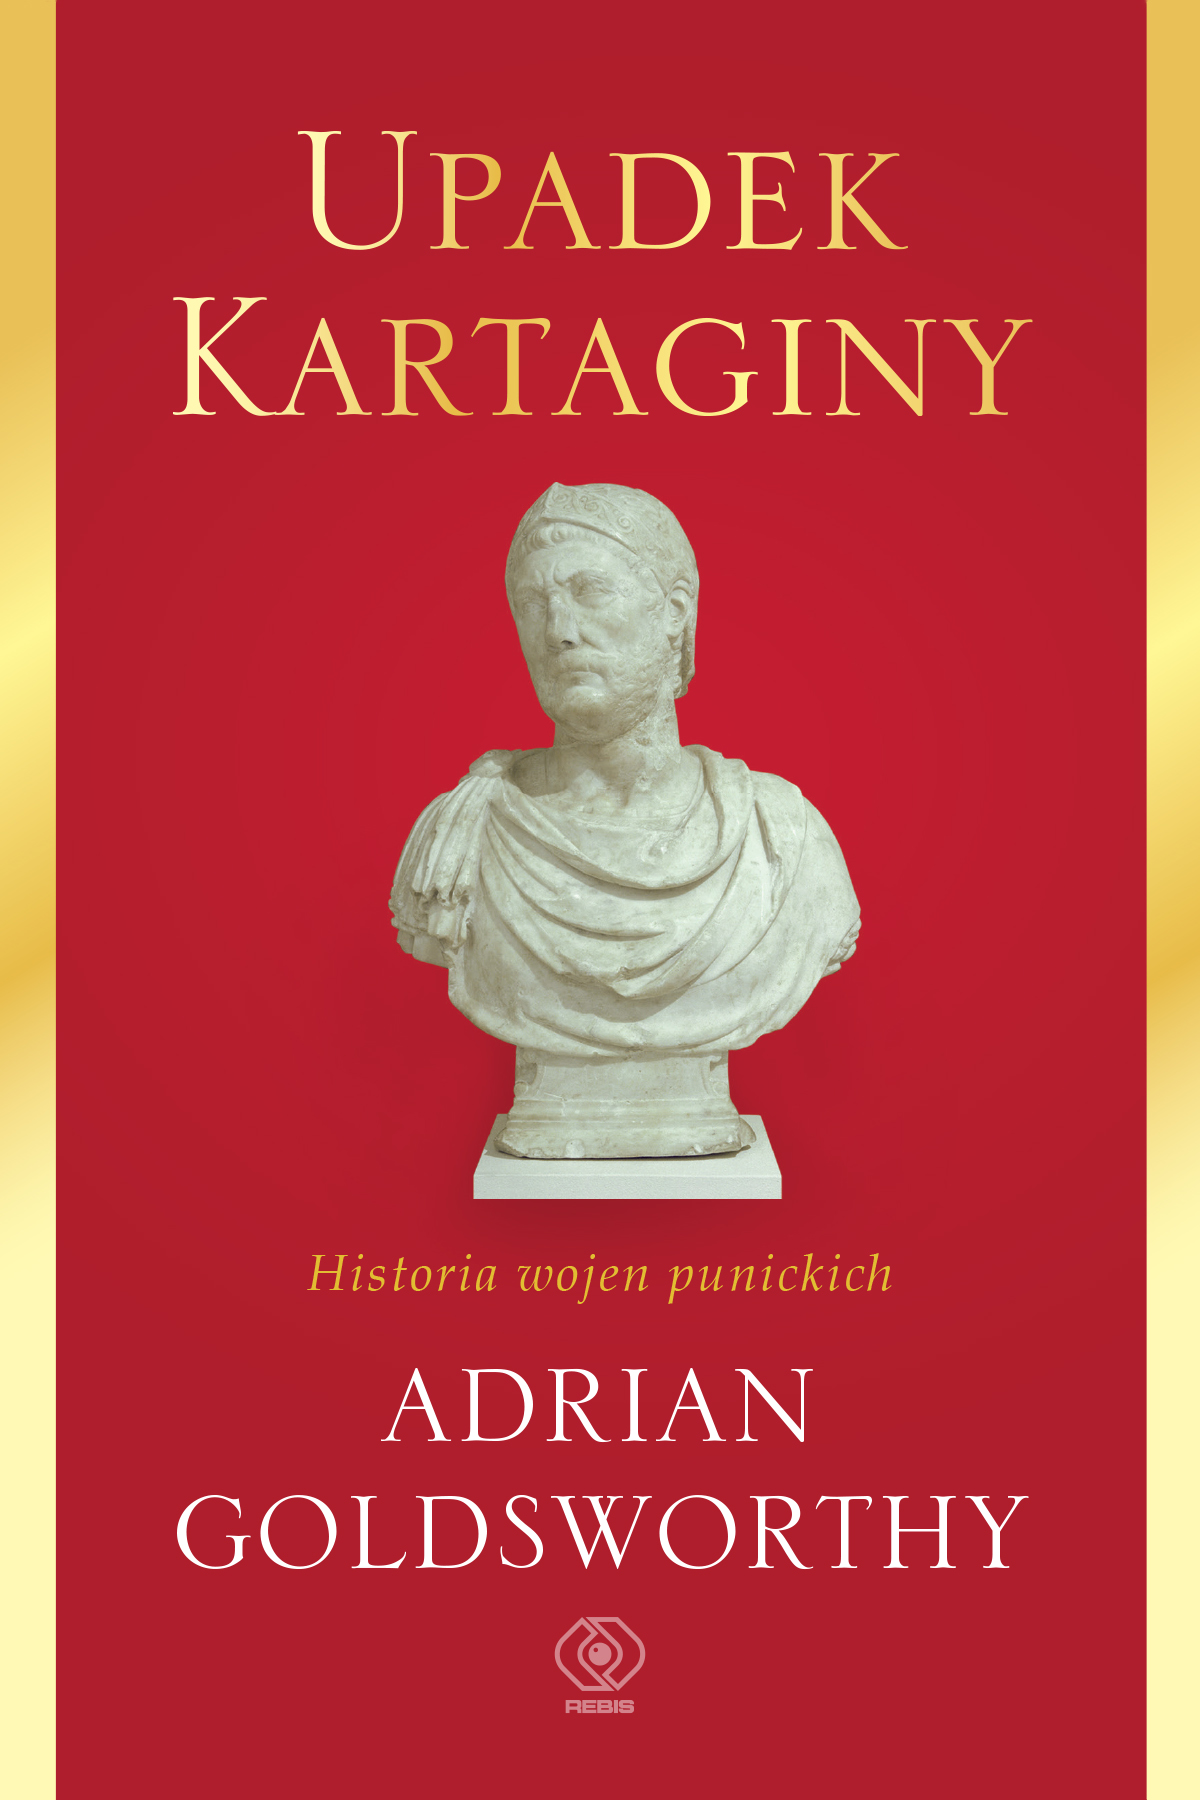 W REBIS-ie: "Upadek Kartaginy. Historia wojen punickich", A. Goldsworthy